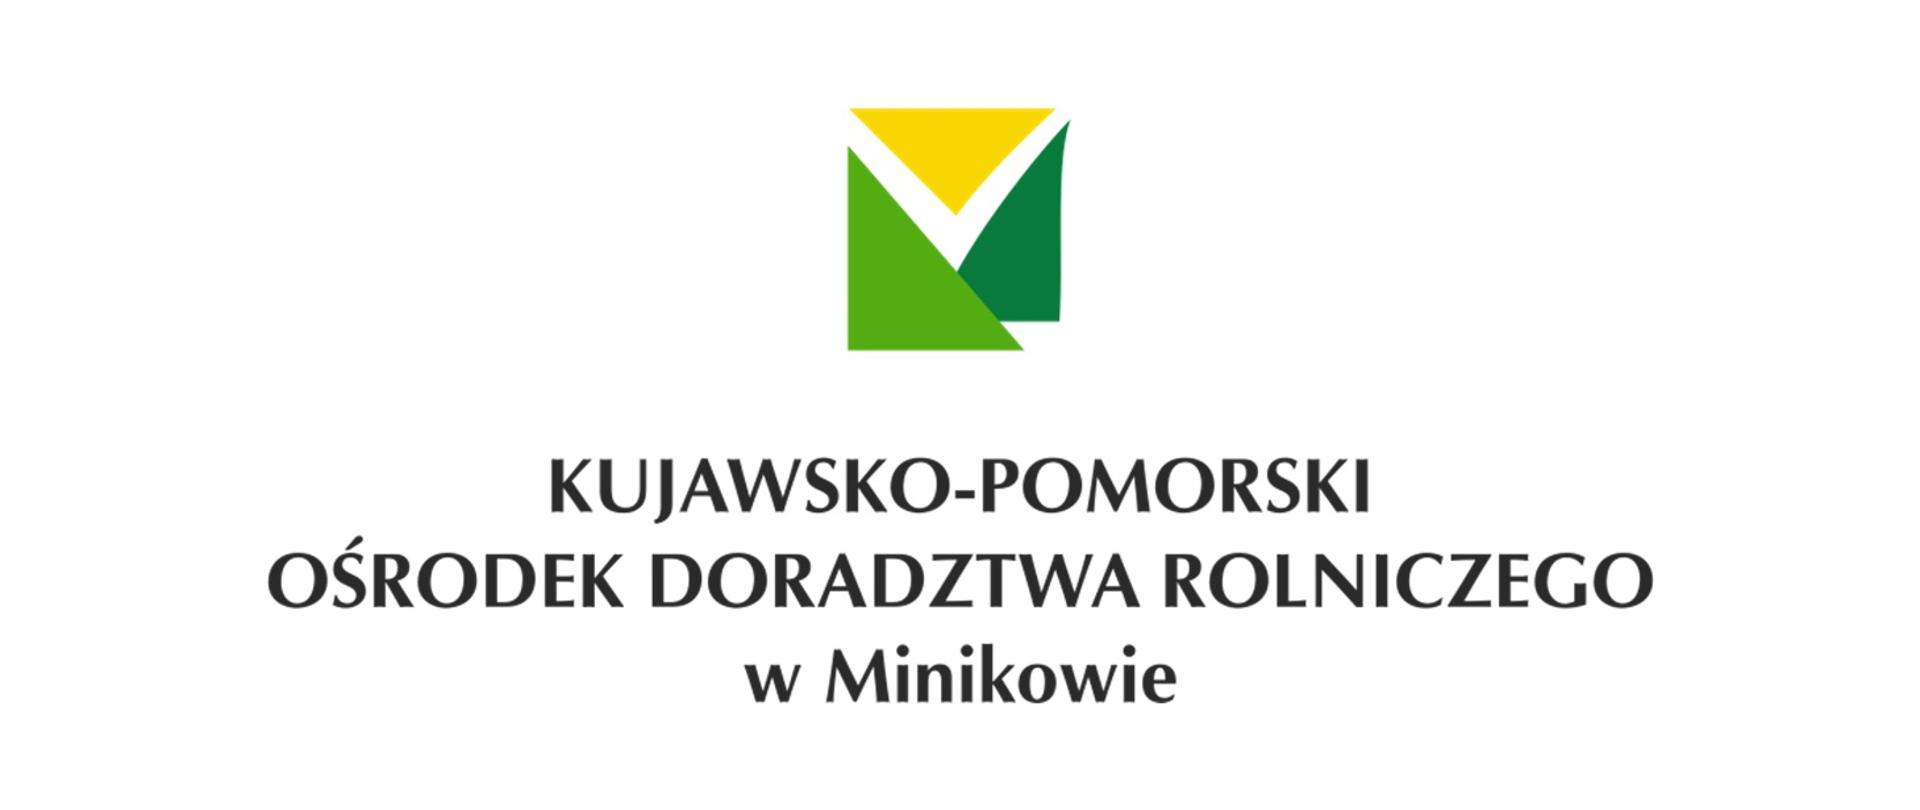 Kujawsko-Pomorski Ośrodek Doradztwa Rolniczego w Minikowie - logotyp